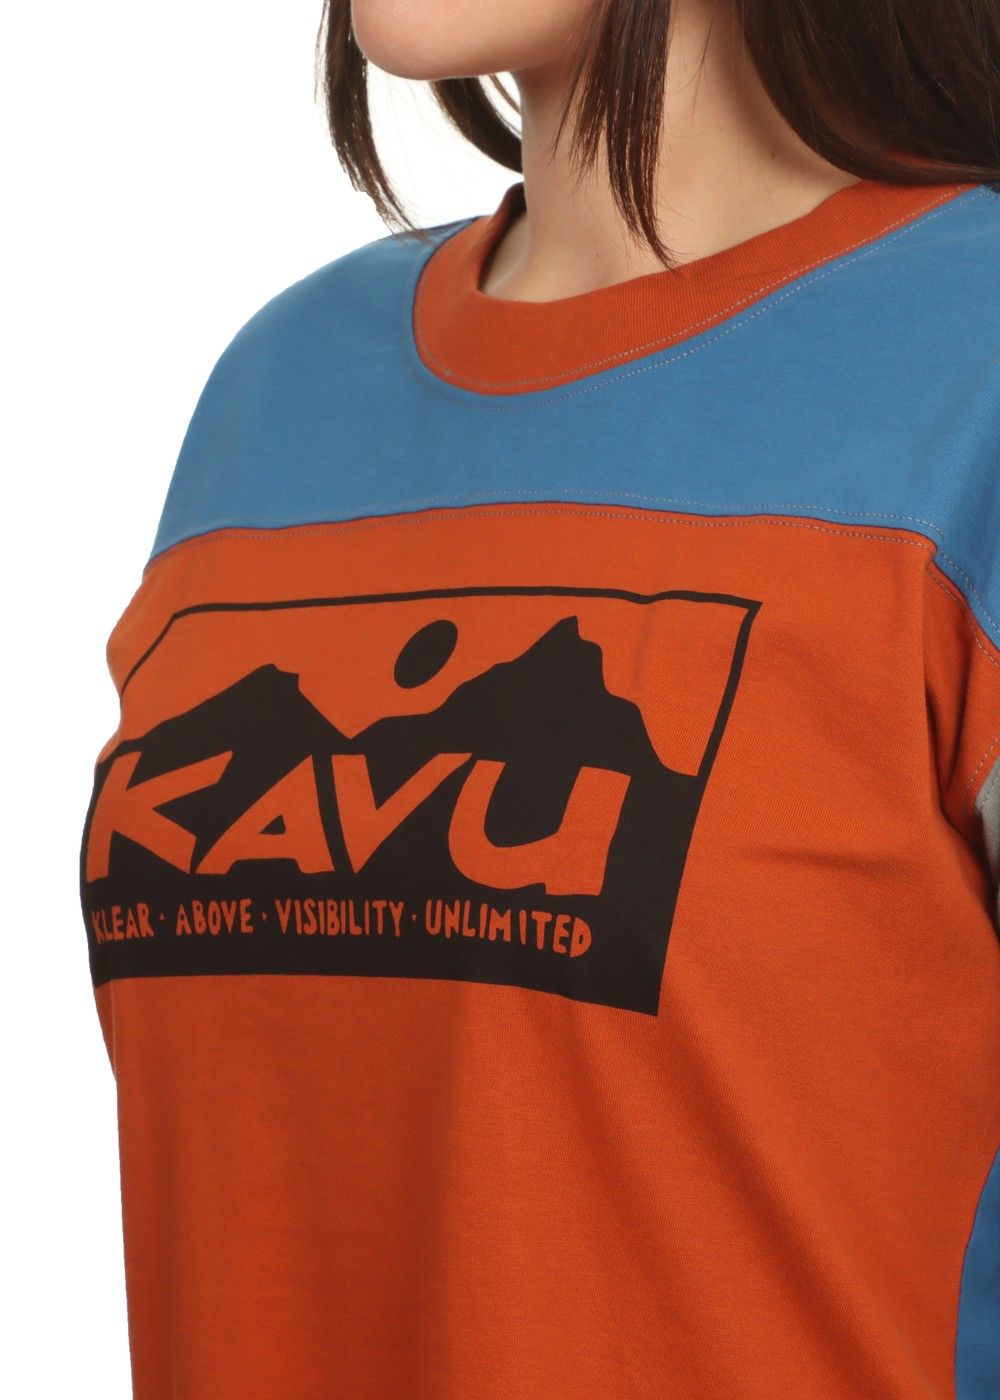 Women's Kavu – The Trendy Walrus